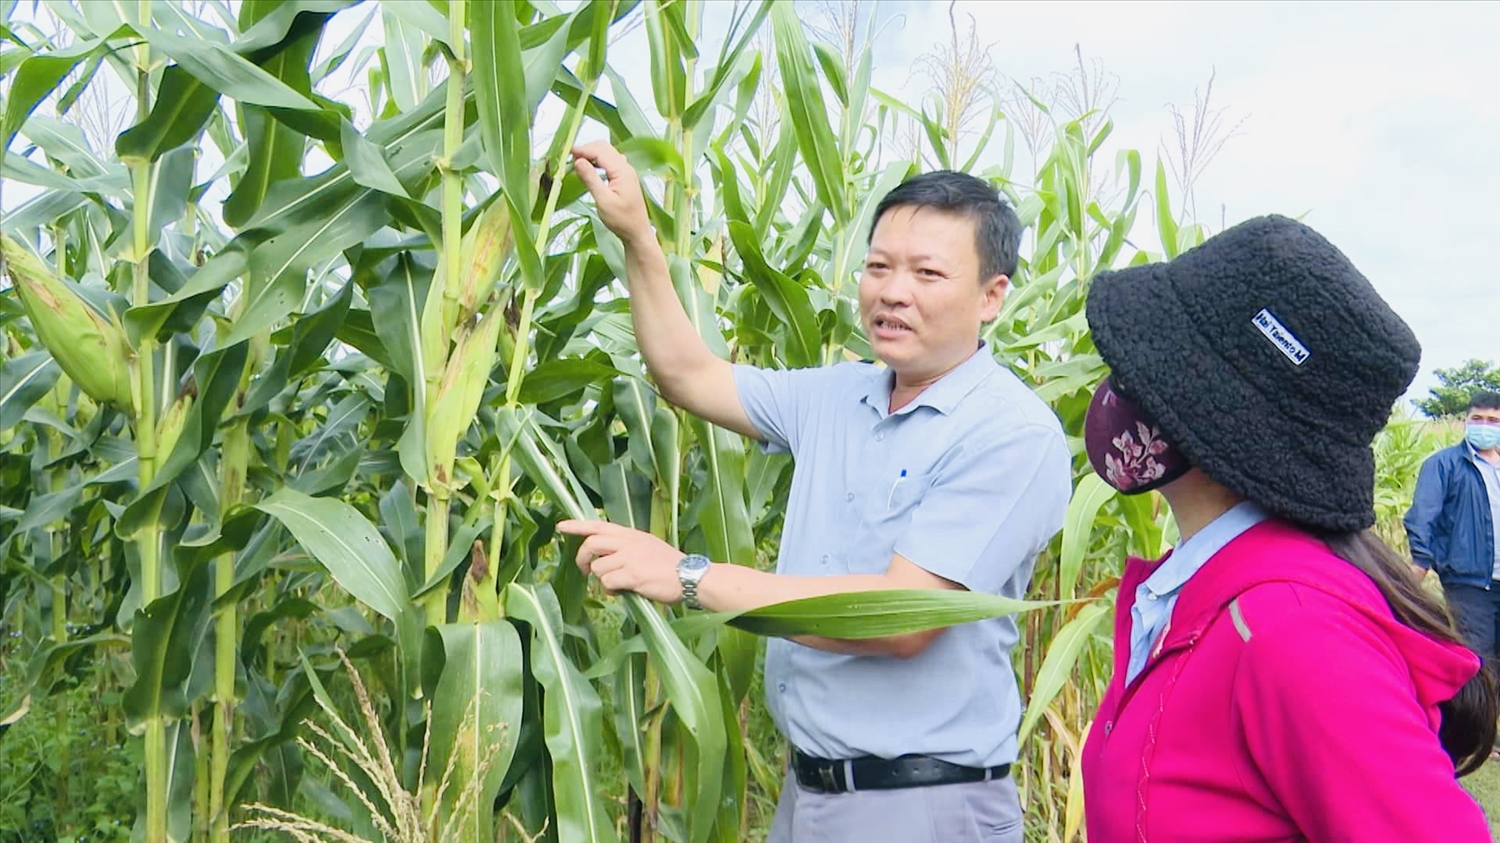 Mô hình trồng bắp mỹ ở xã Ayun (huyện Chư Sê, Gia Lai) bước đầu đã mang lại hiệu quả kinh tế cho người dân